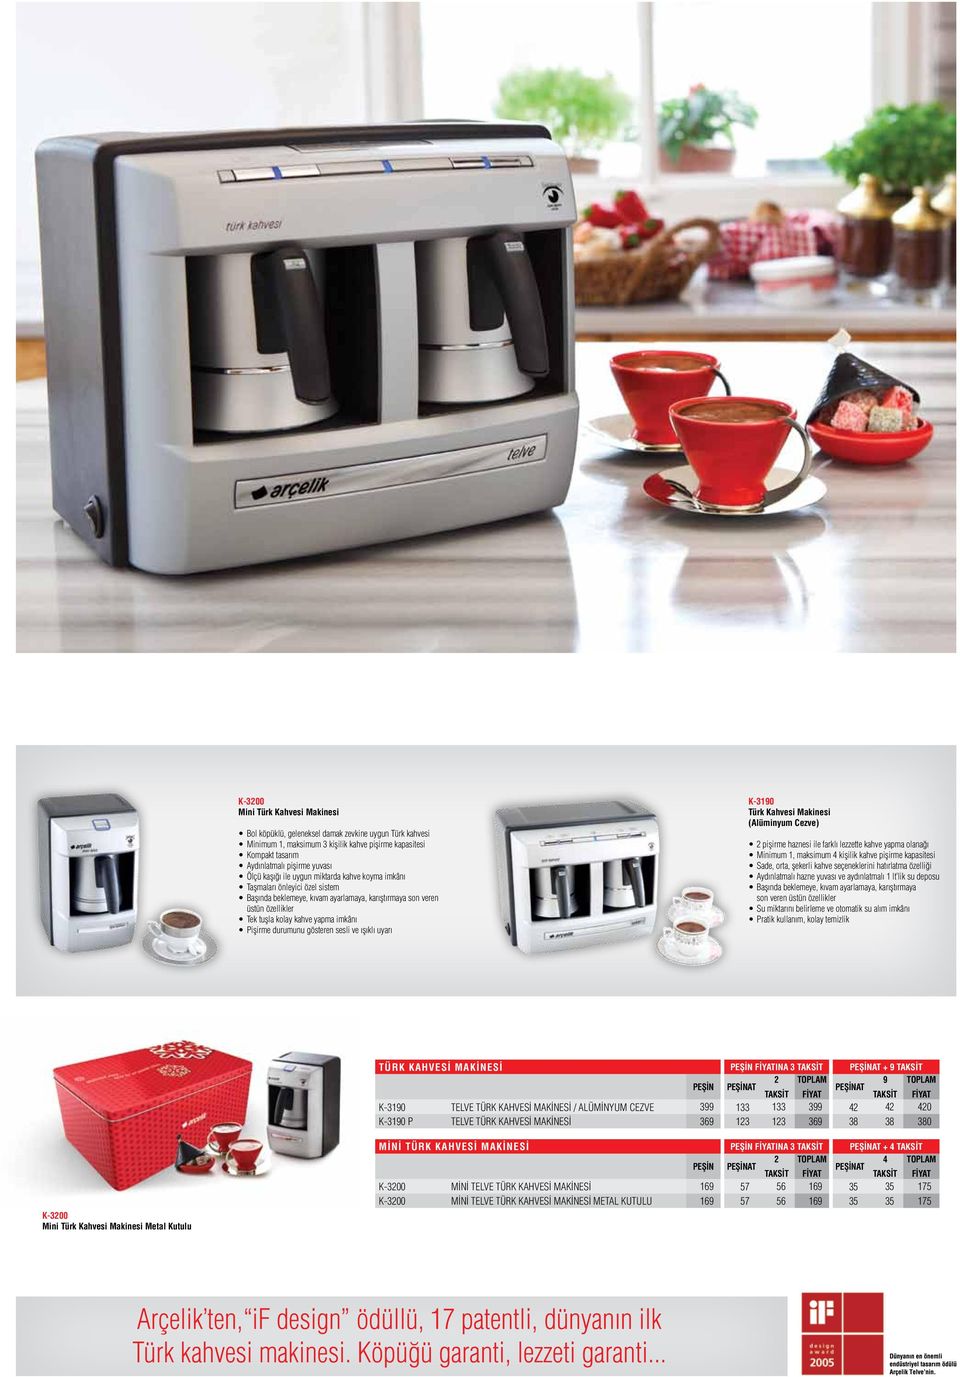 durumunu gösteren sesli ve ışıklı uyarı K-90 Türk Kahvesi Makinesi (Alüminyum Cezve) 2 pişirme haznesi ile farklı lezzette kahve yapma olanağı Minimum 1, maksimum 4 kişilik kahve pişirme kapasitesi